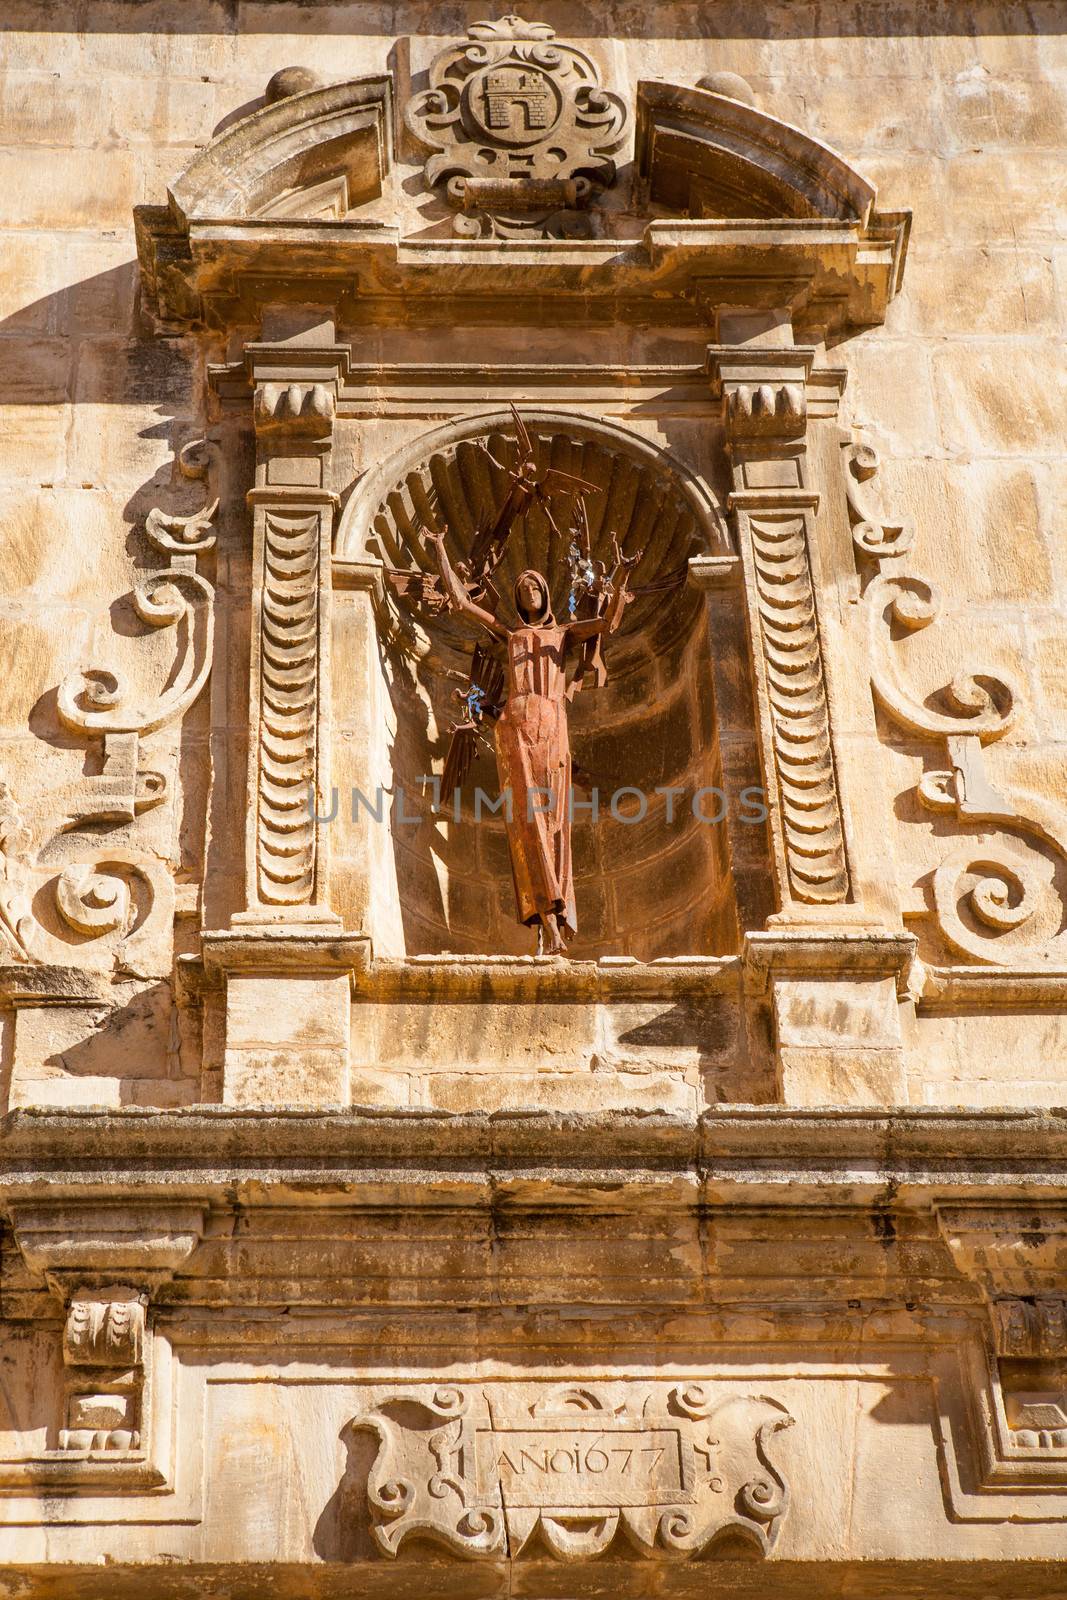 Benassal chuch facade Benasal in Maestrazgo Castellon Spain